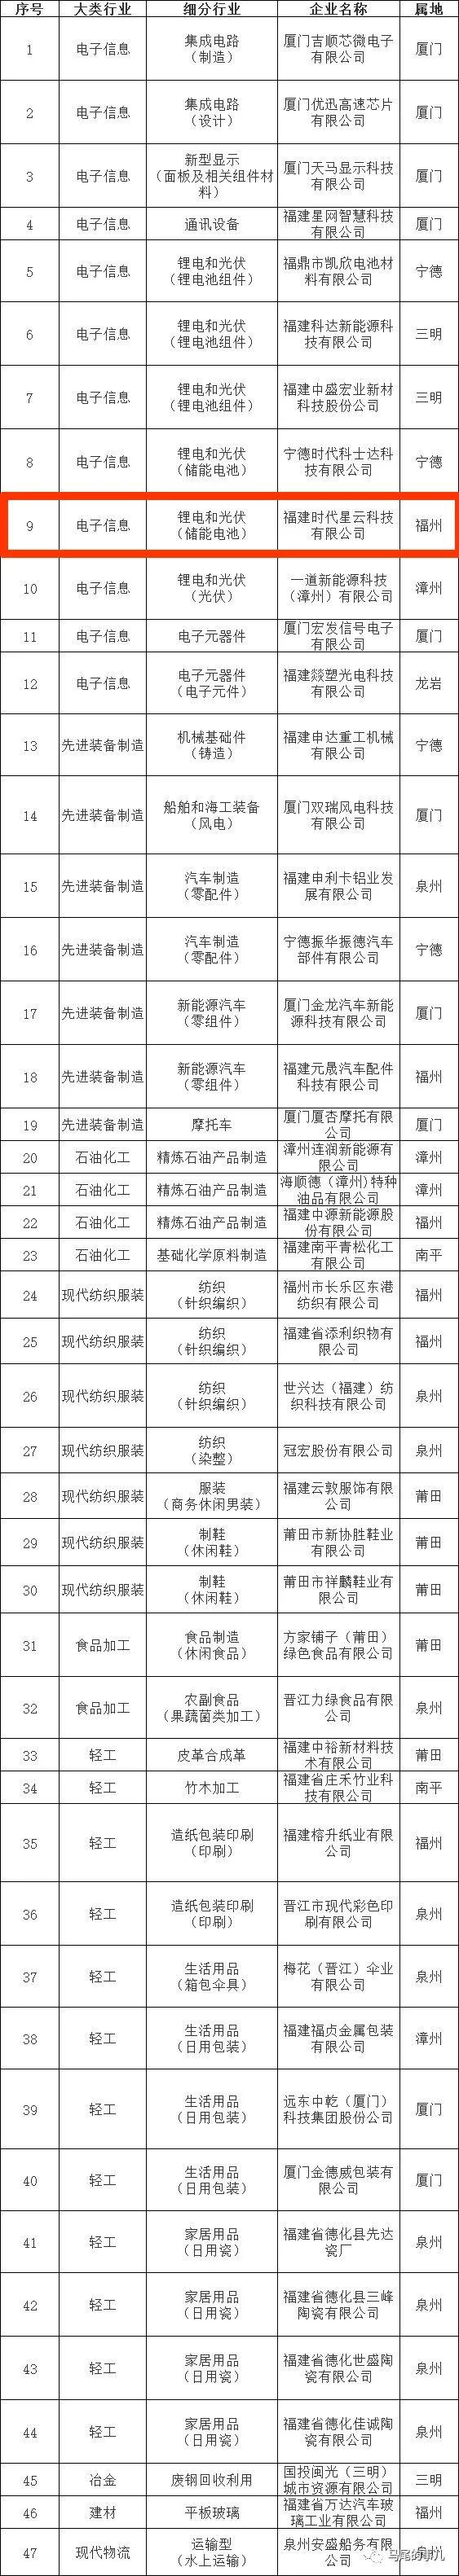 福建省工业龙头企业名单，马尾两家企业入选